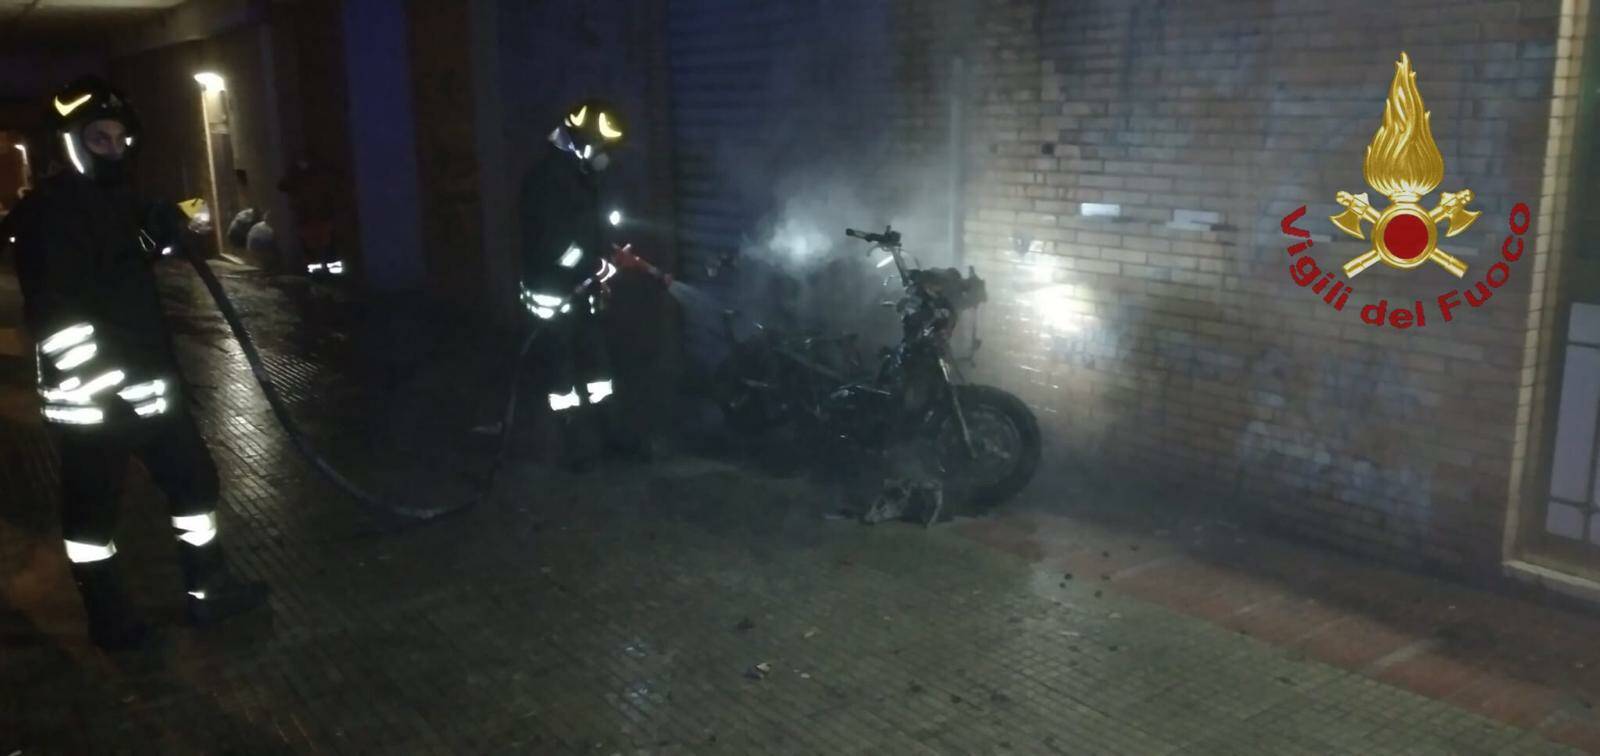 Civitavecchia, a fuoco uno scooter in via De Gasperi: paura per i negozi vicini